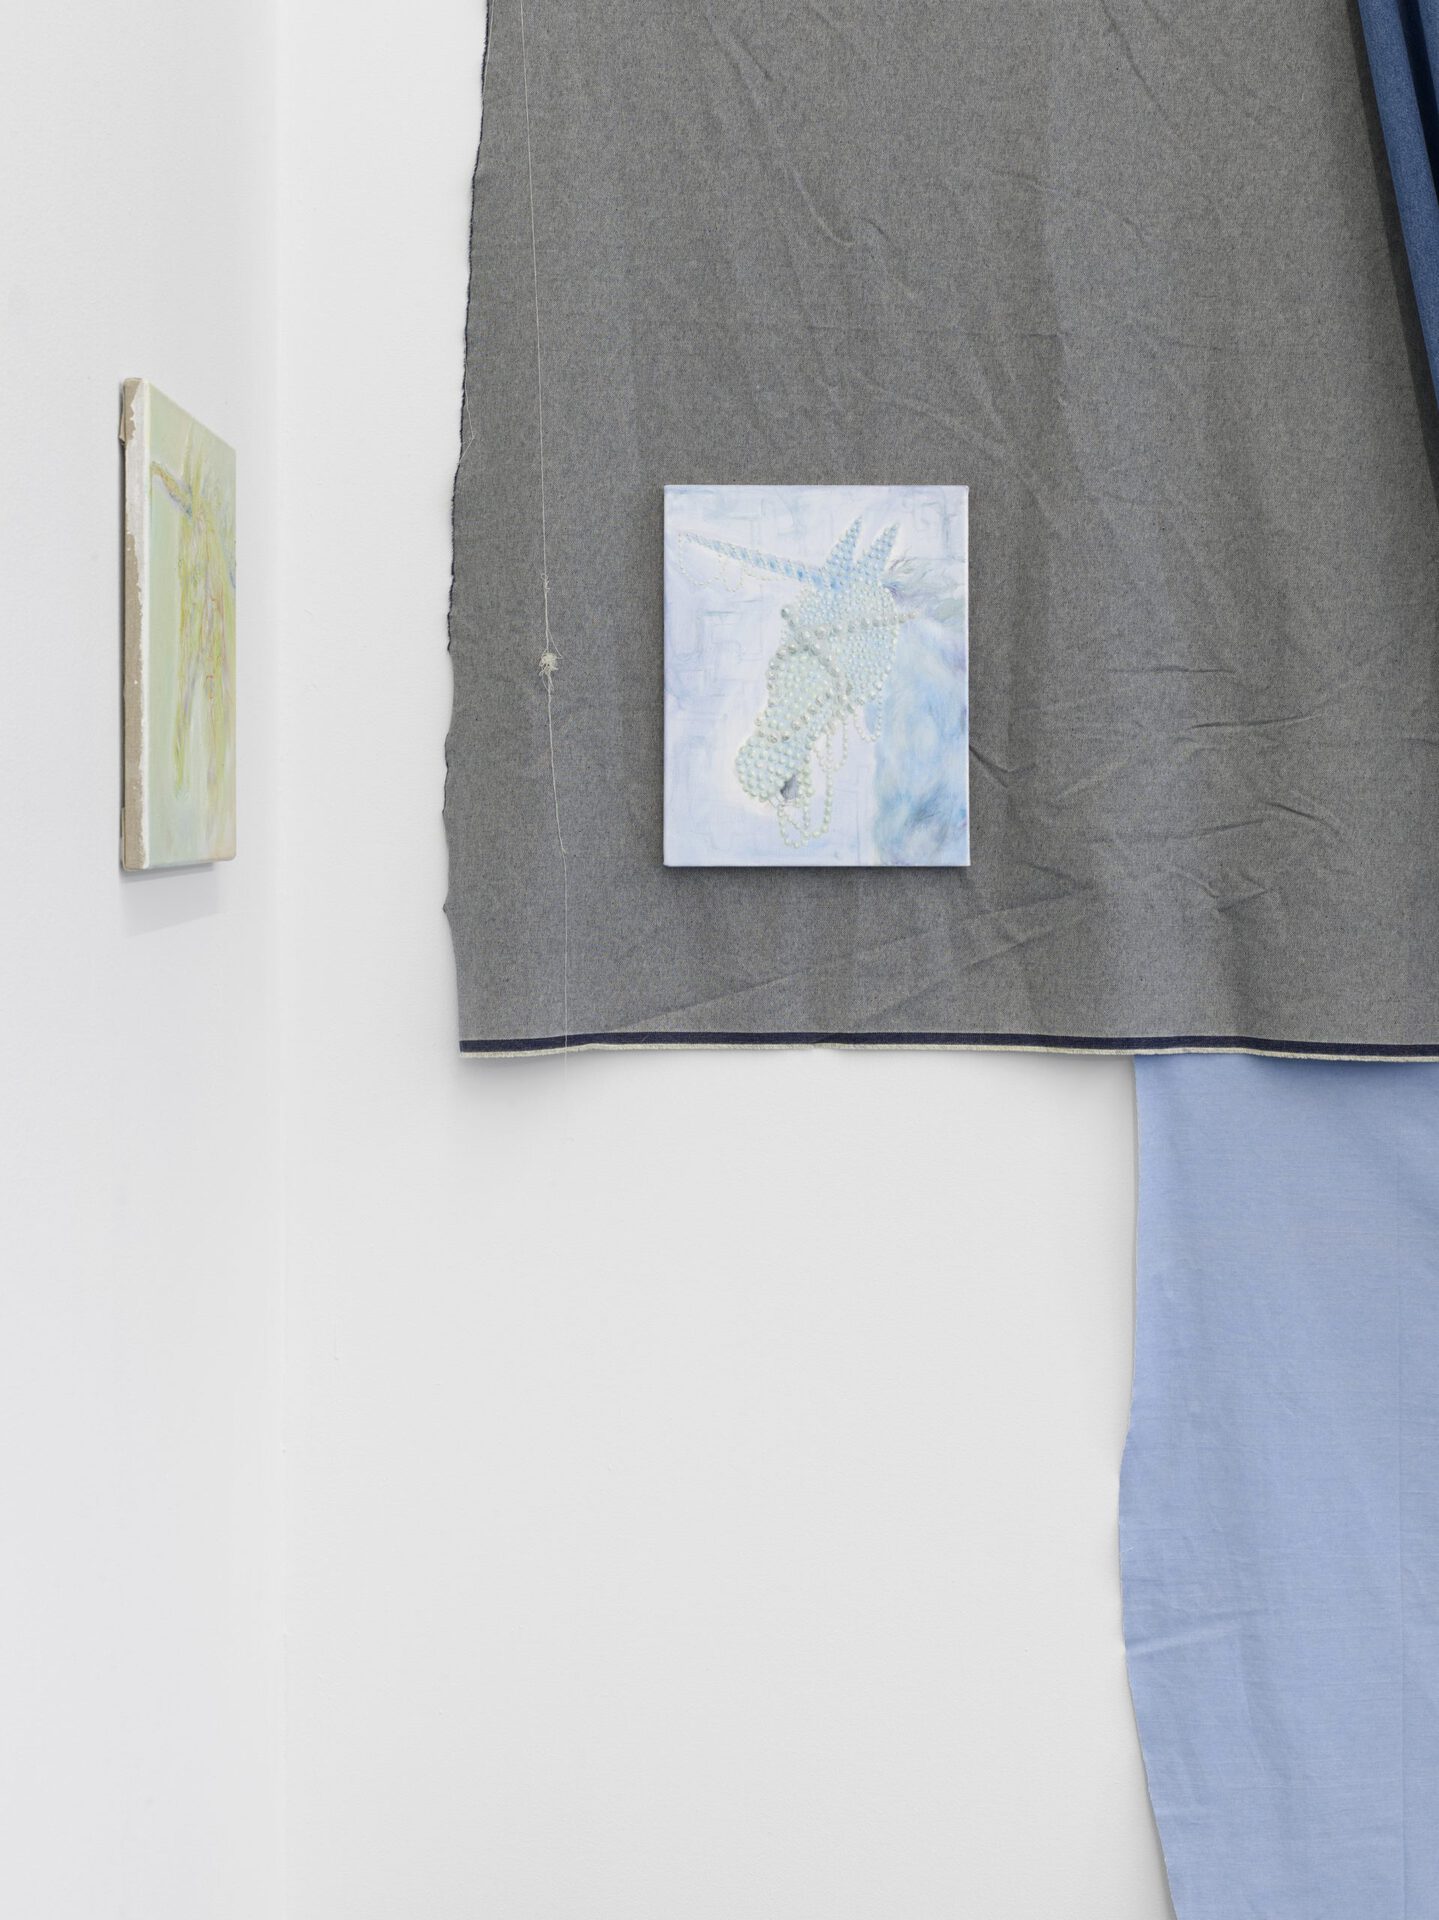 Alison Yip, Weekender, 2020 oil on canvas, 31 x 39 cm und Realismus I, 2020 Öl auf Leinwand, 31 x 39 cm, exhibition view, Dortmunder Kunstverein  Photo: Simon Vogel